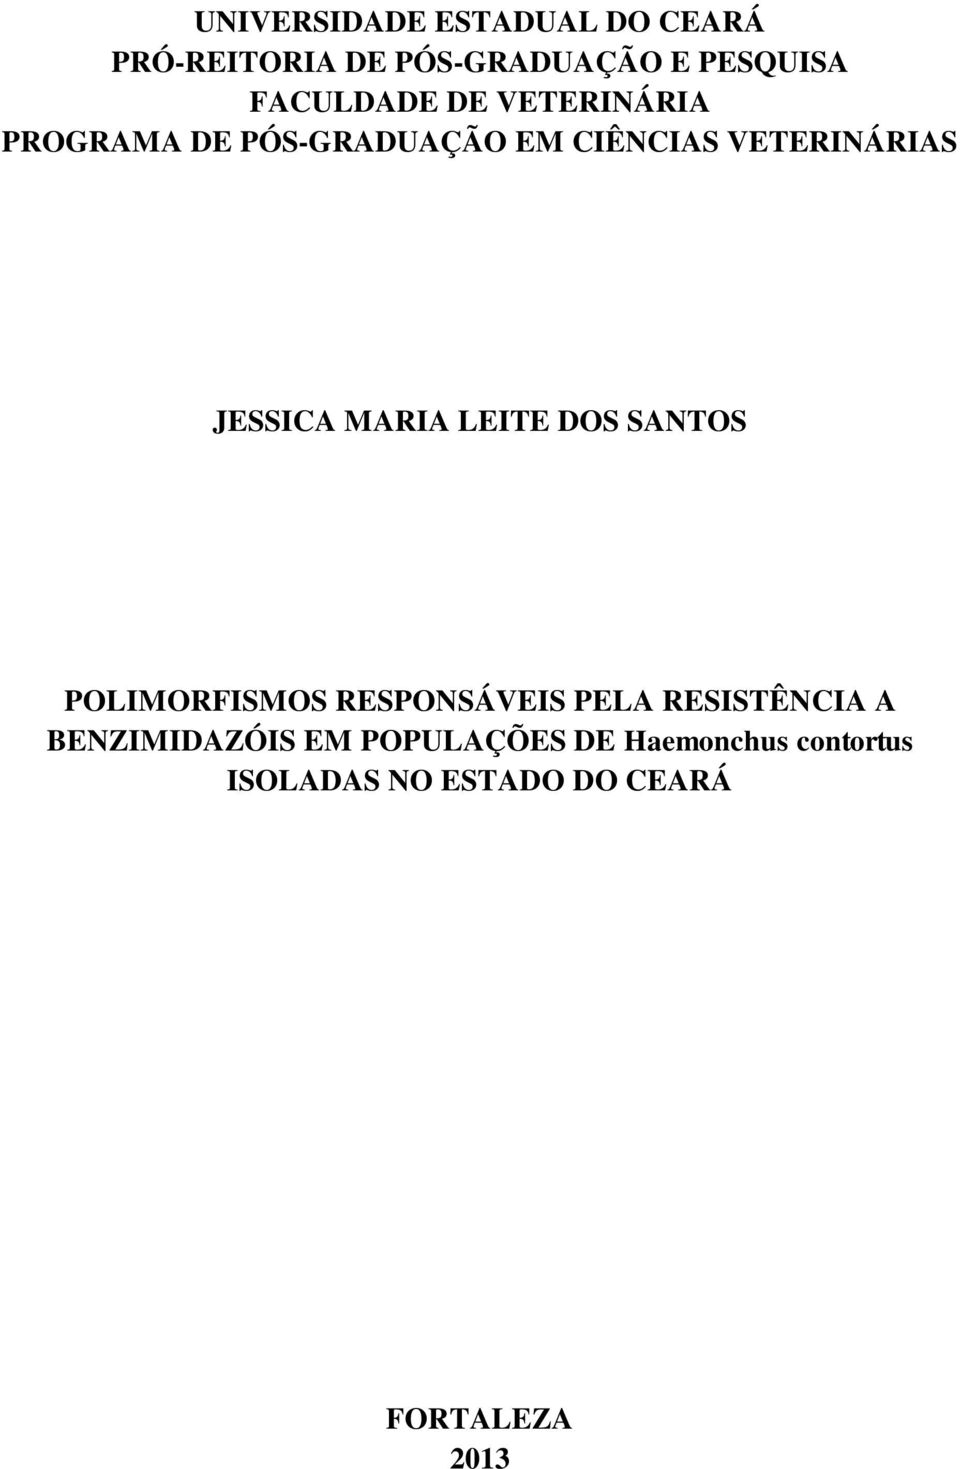 JESSICA MARIA LEITE DOS SANTOS POLIMORFISMOS RESPONSÁVEIS PELA RESISTÊNCIA A